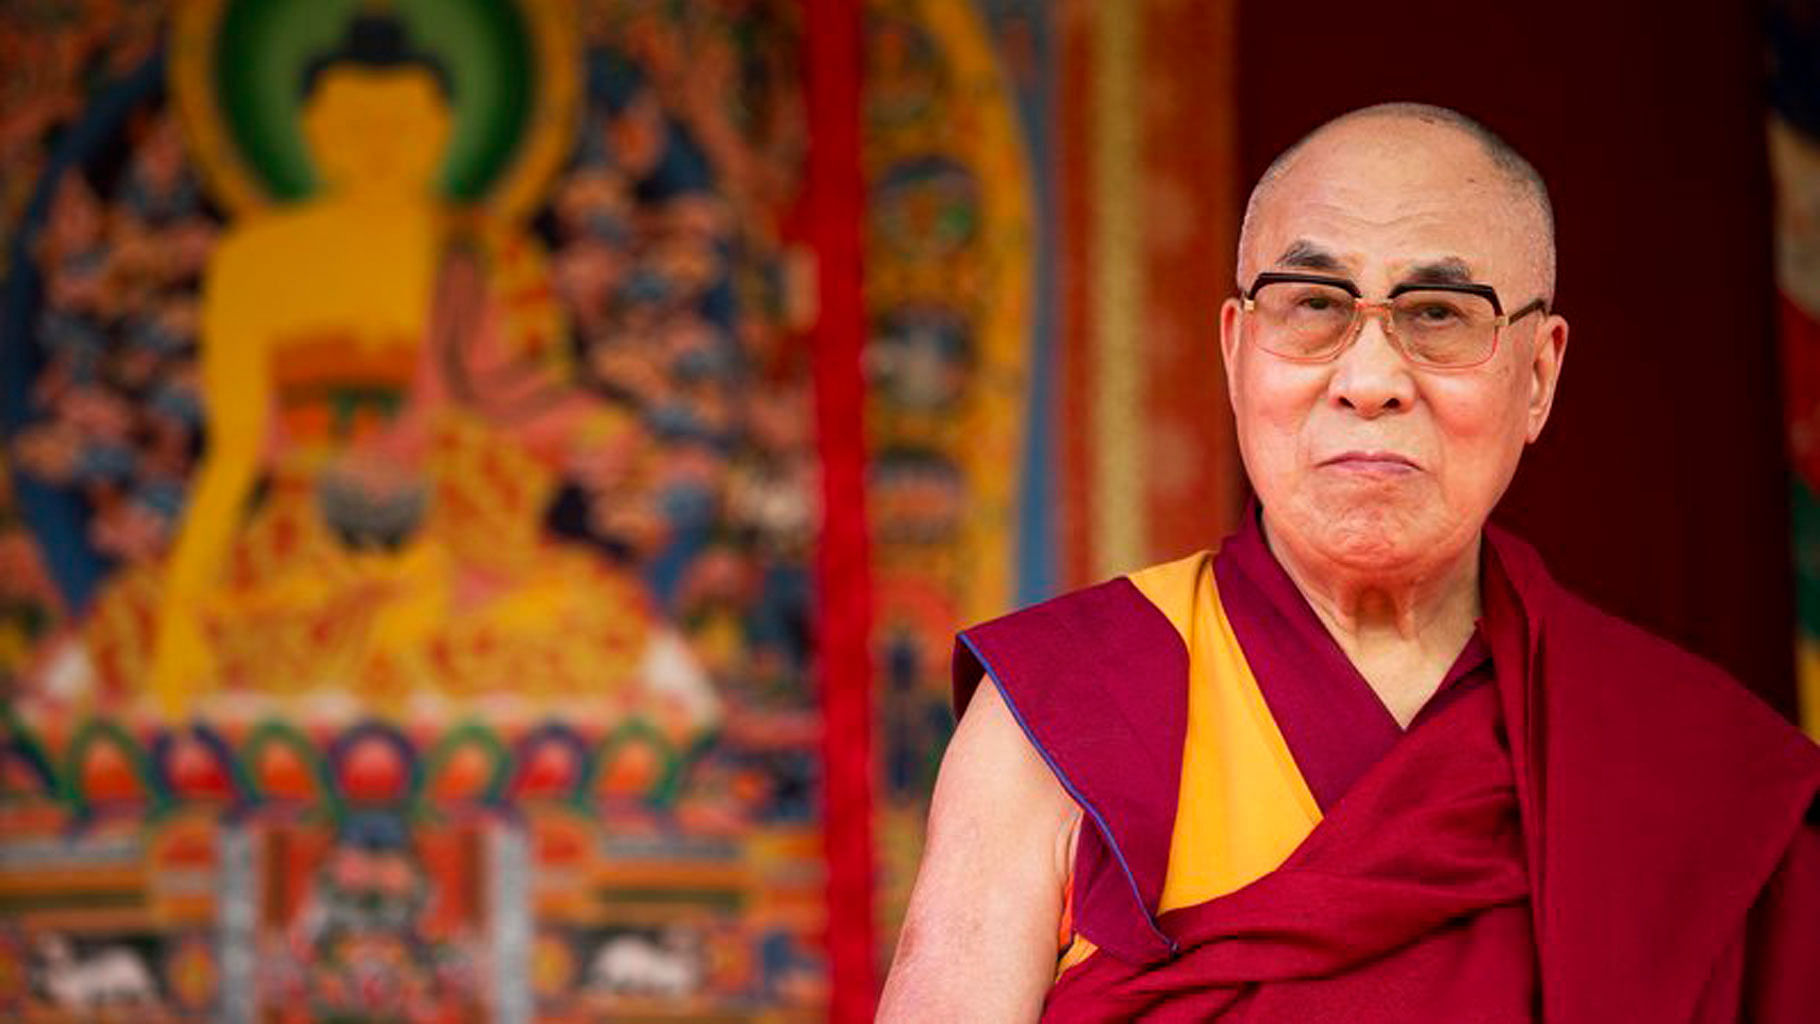 File image of the Dalai Lama.